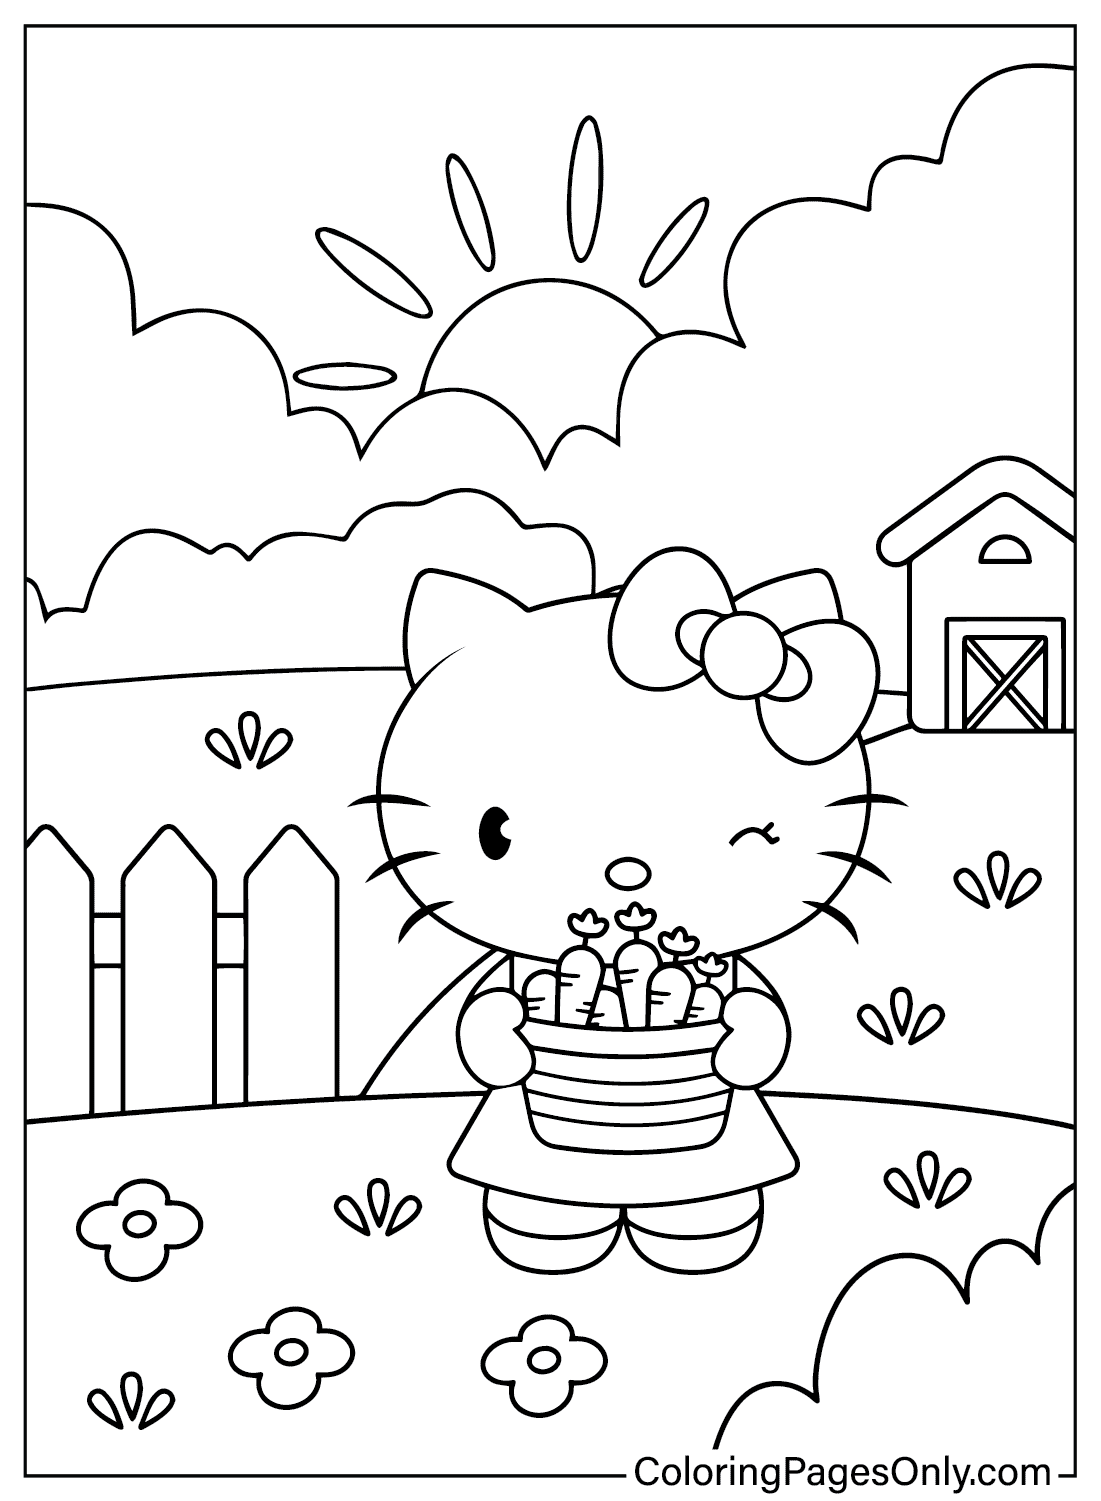 Картинки Hello Kitty для раскрашивания